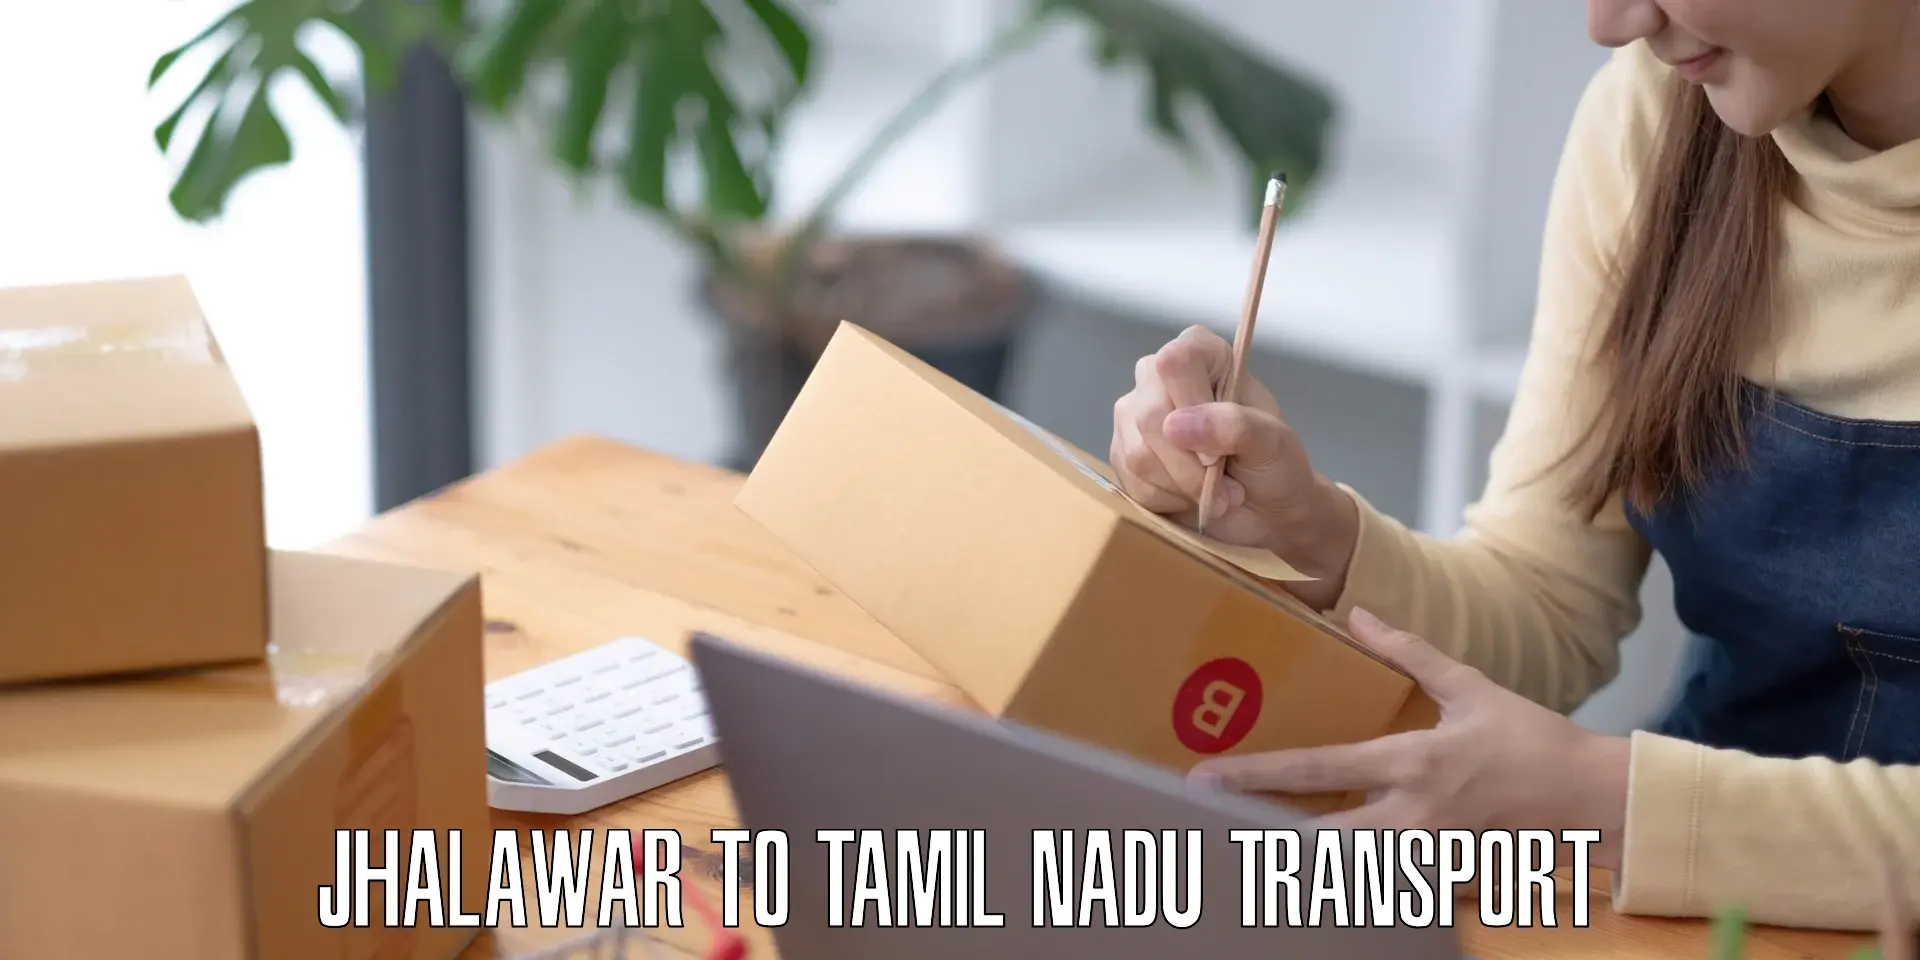 Nearest transport service Jhalawar to Tamil Nadu